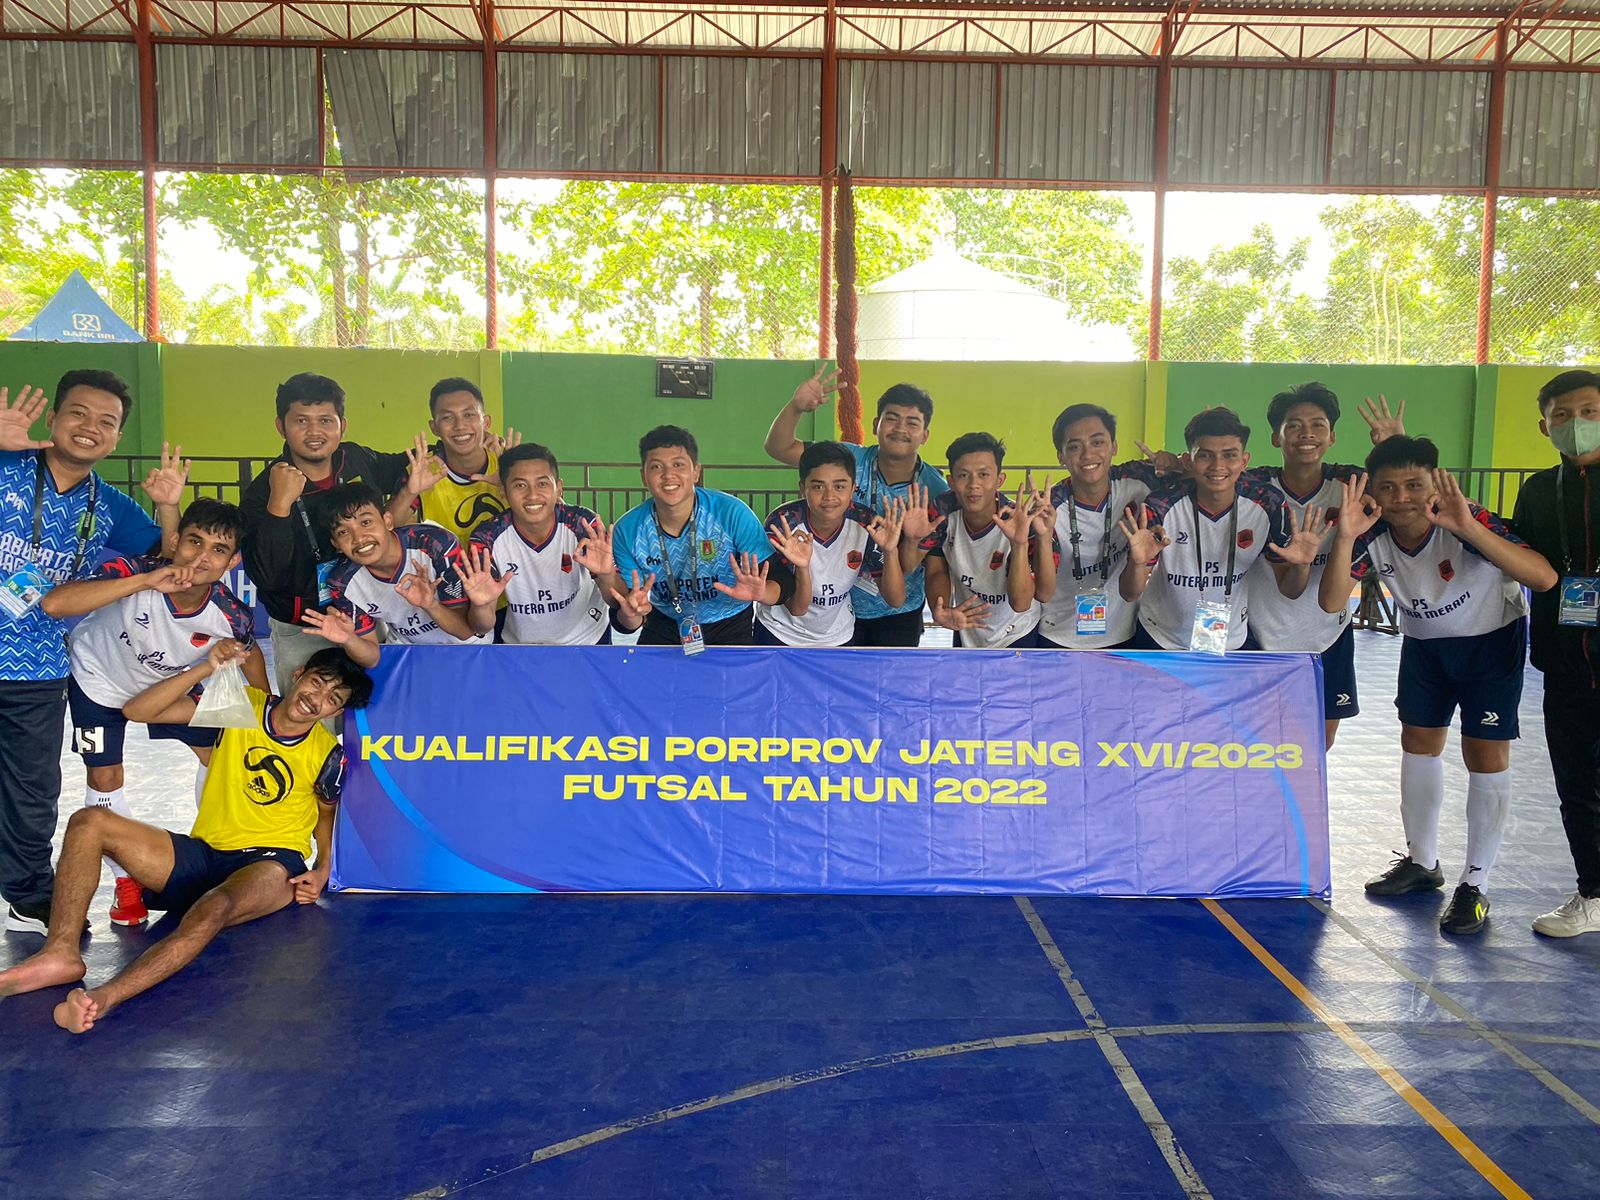 Foto Kualifikasi PORPROV Jateng XVI/2023 Cabor Futsal